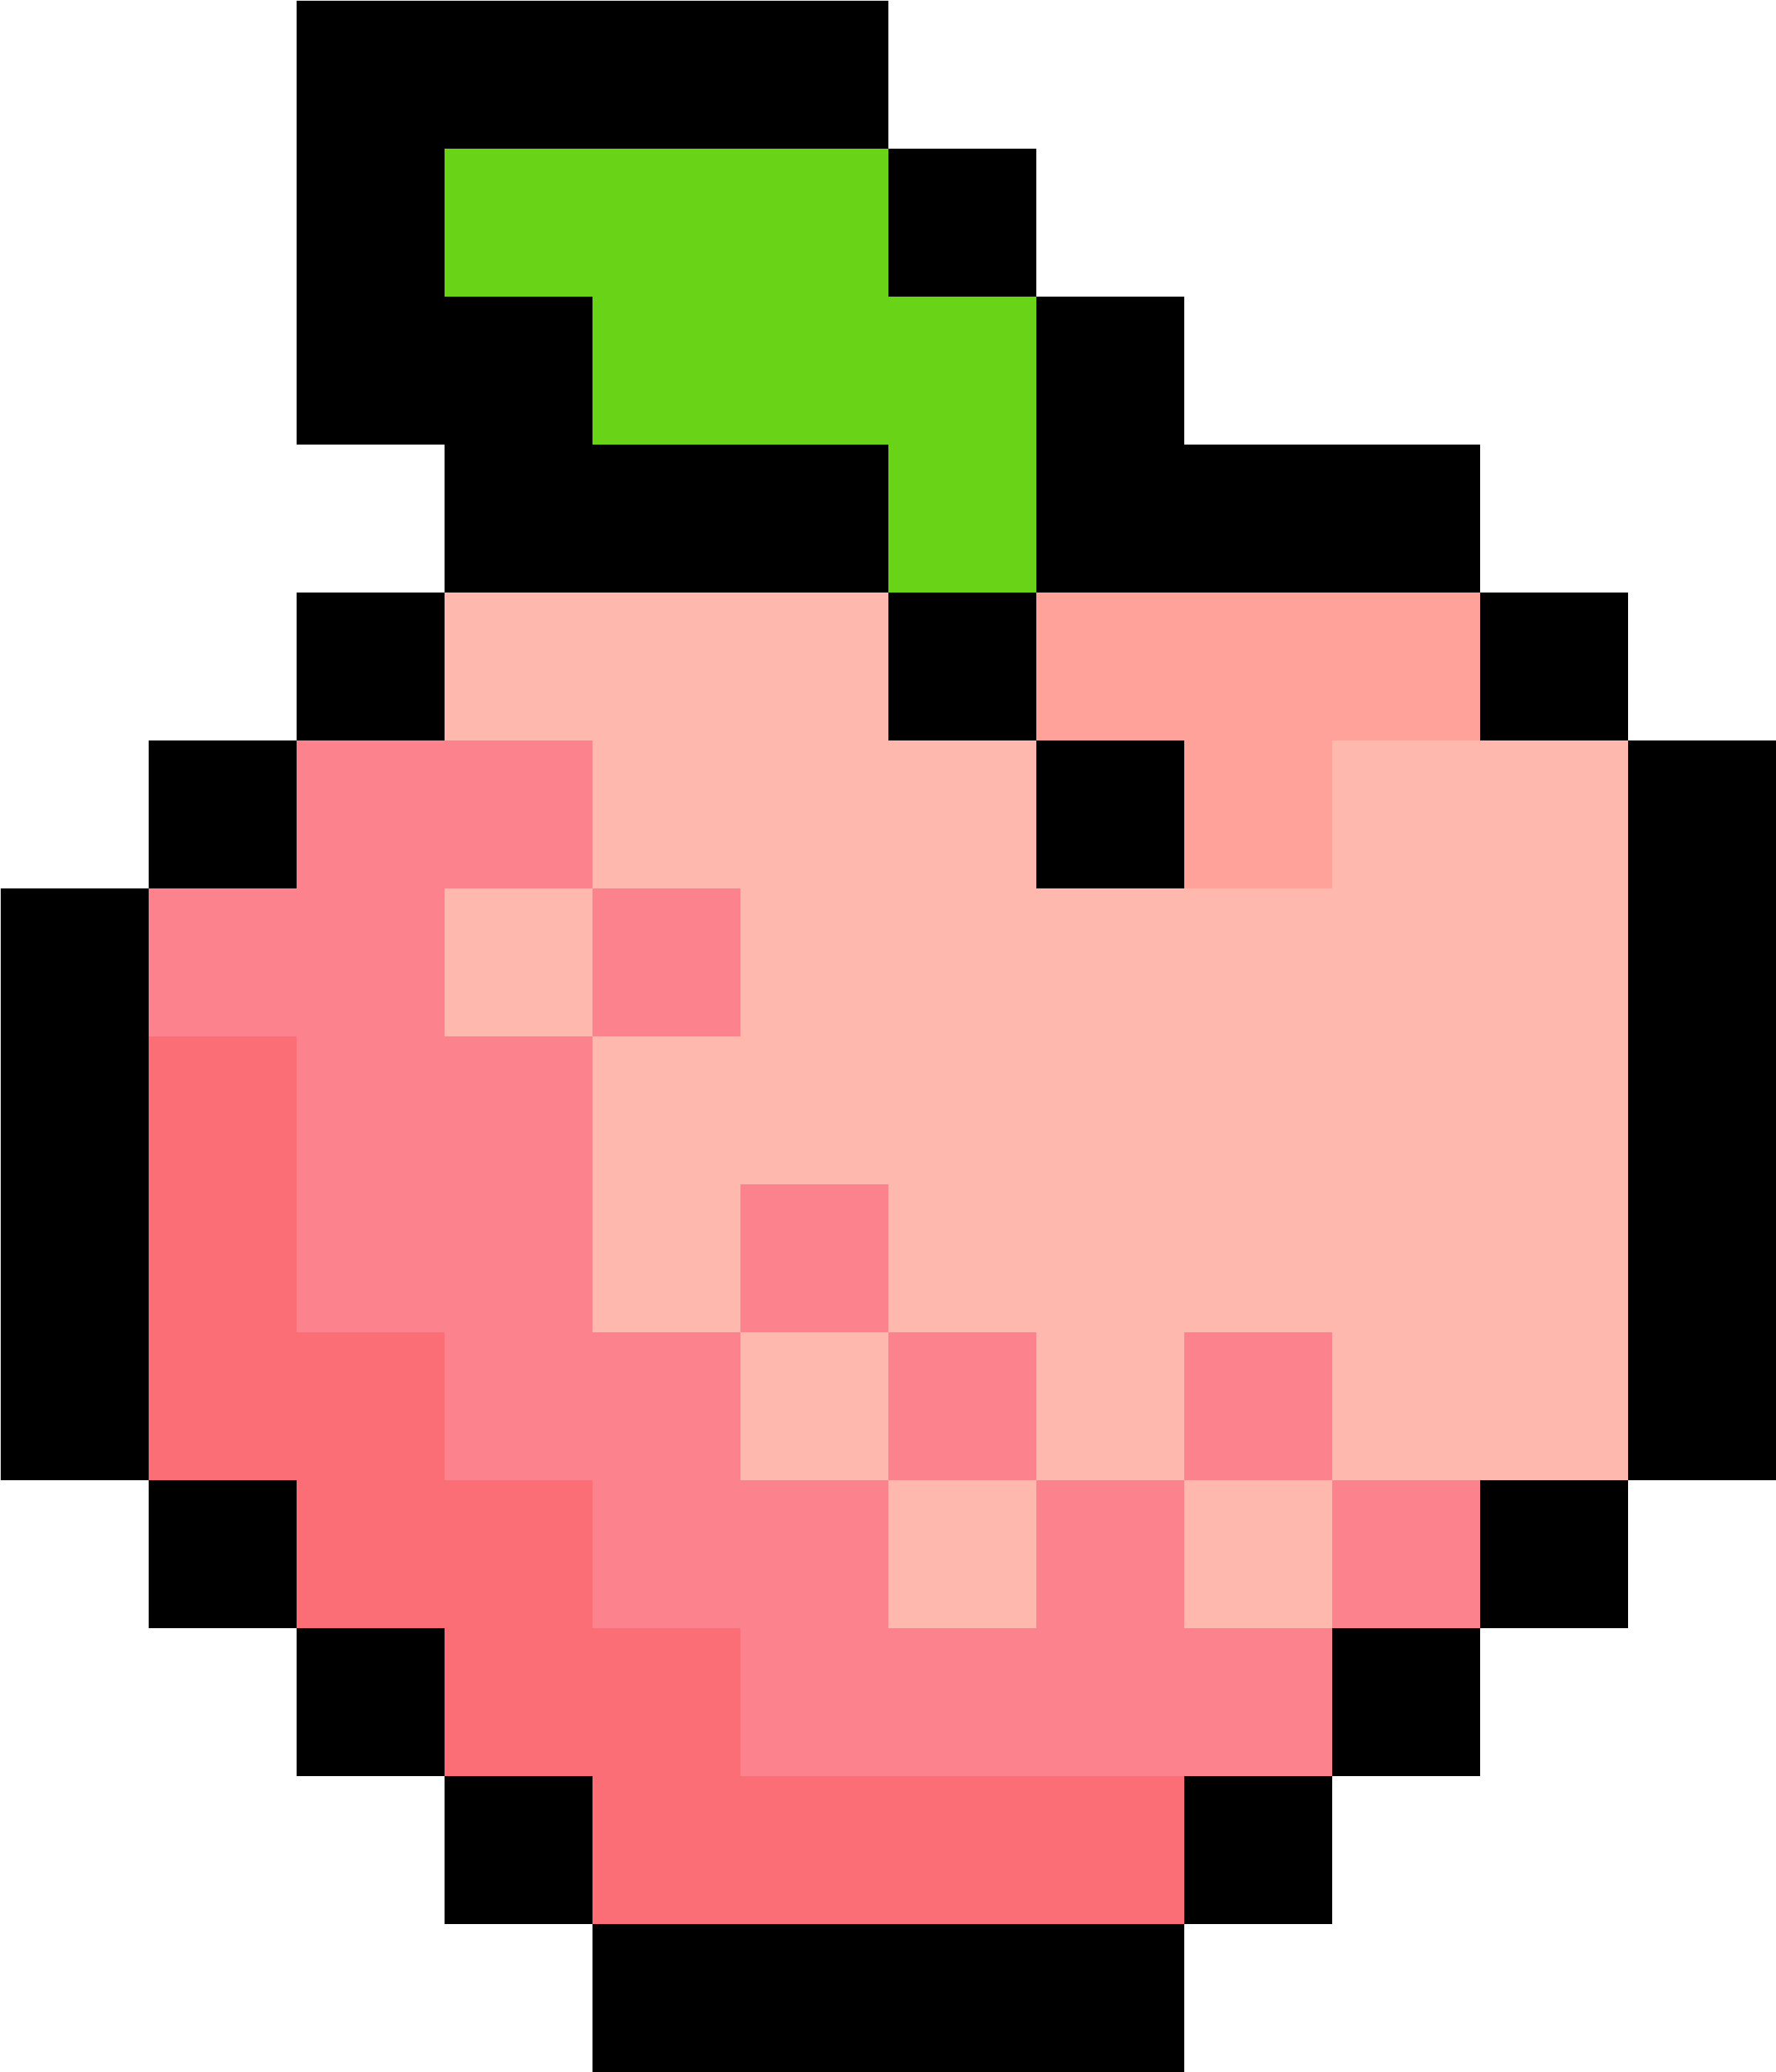 Peach - Binding Of Isaac Pixel Art (3200x3600)